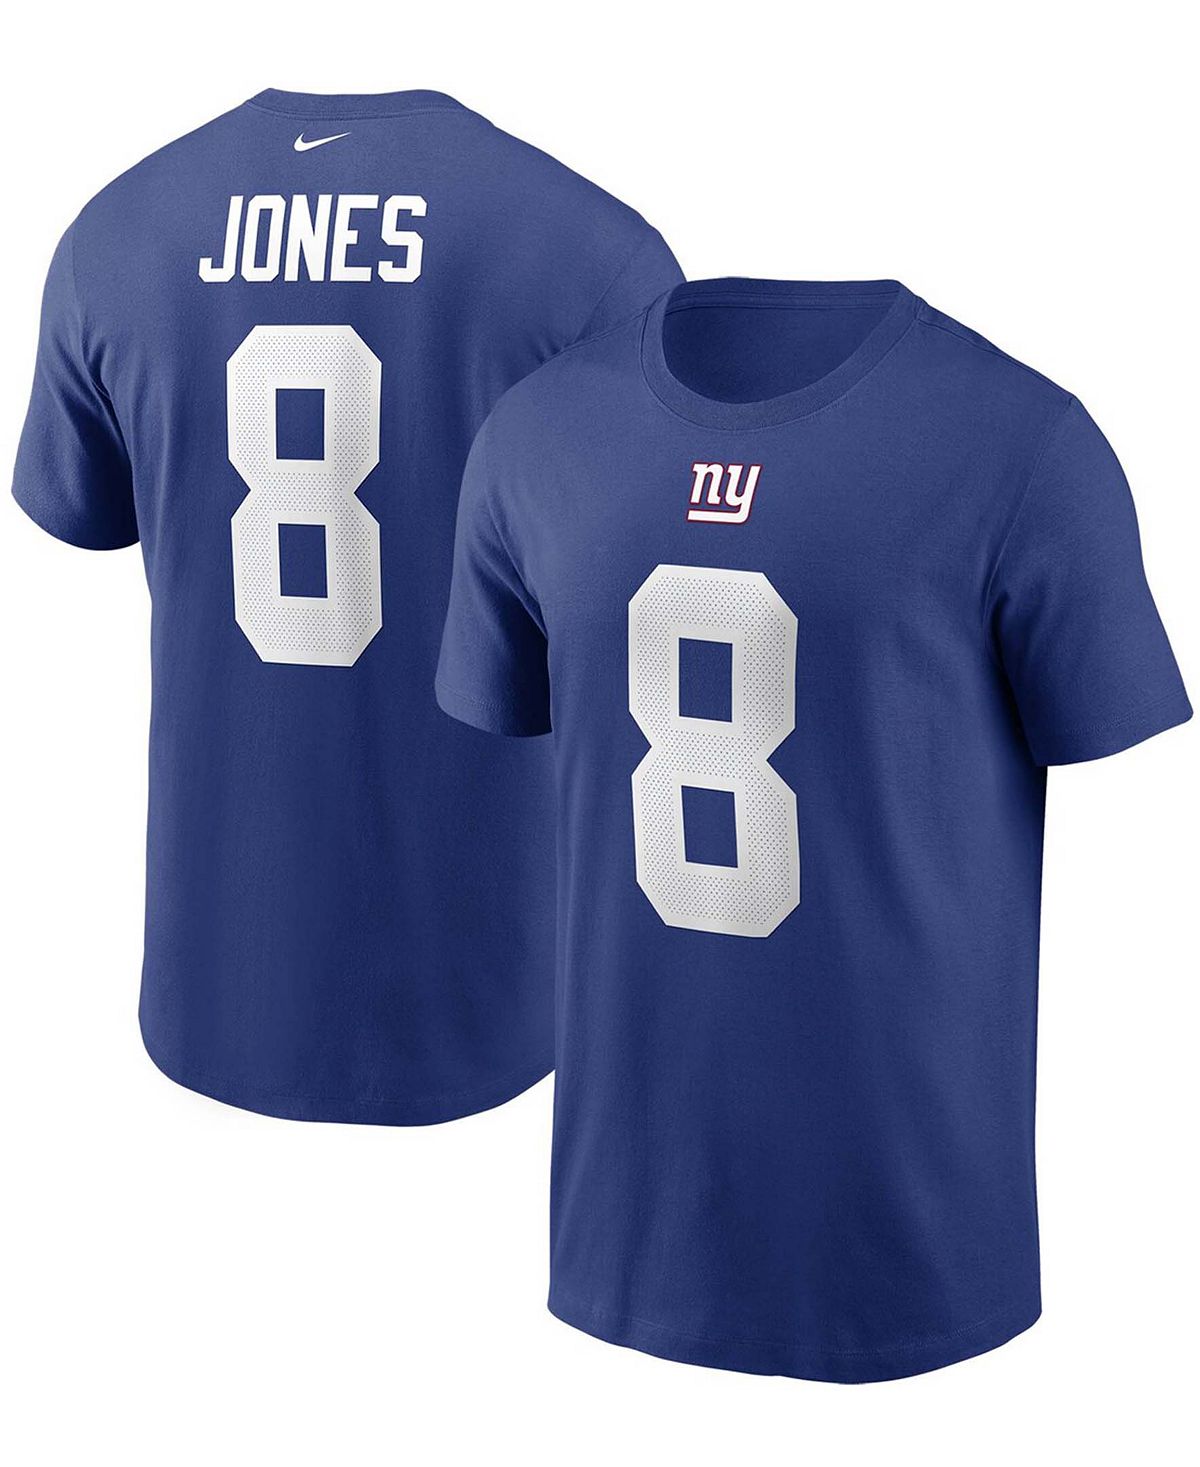 Мужская футболка с именем и номером Daniel Jones Royal New York Giants Nike